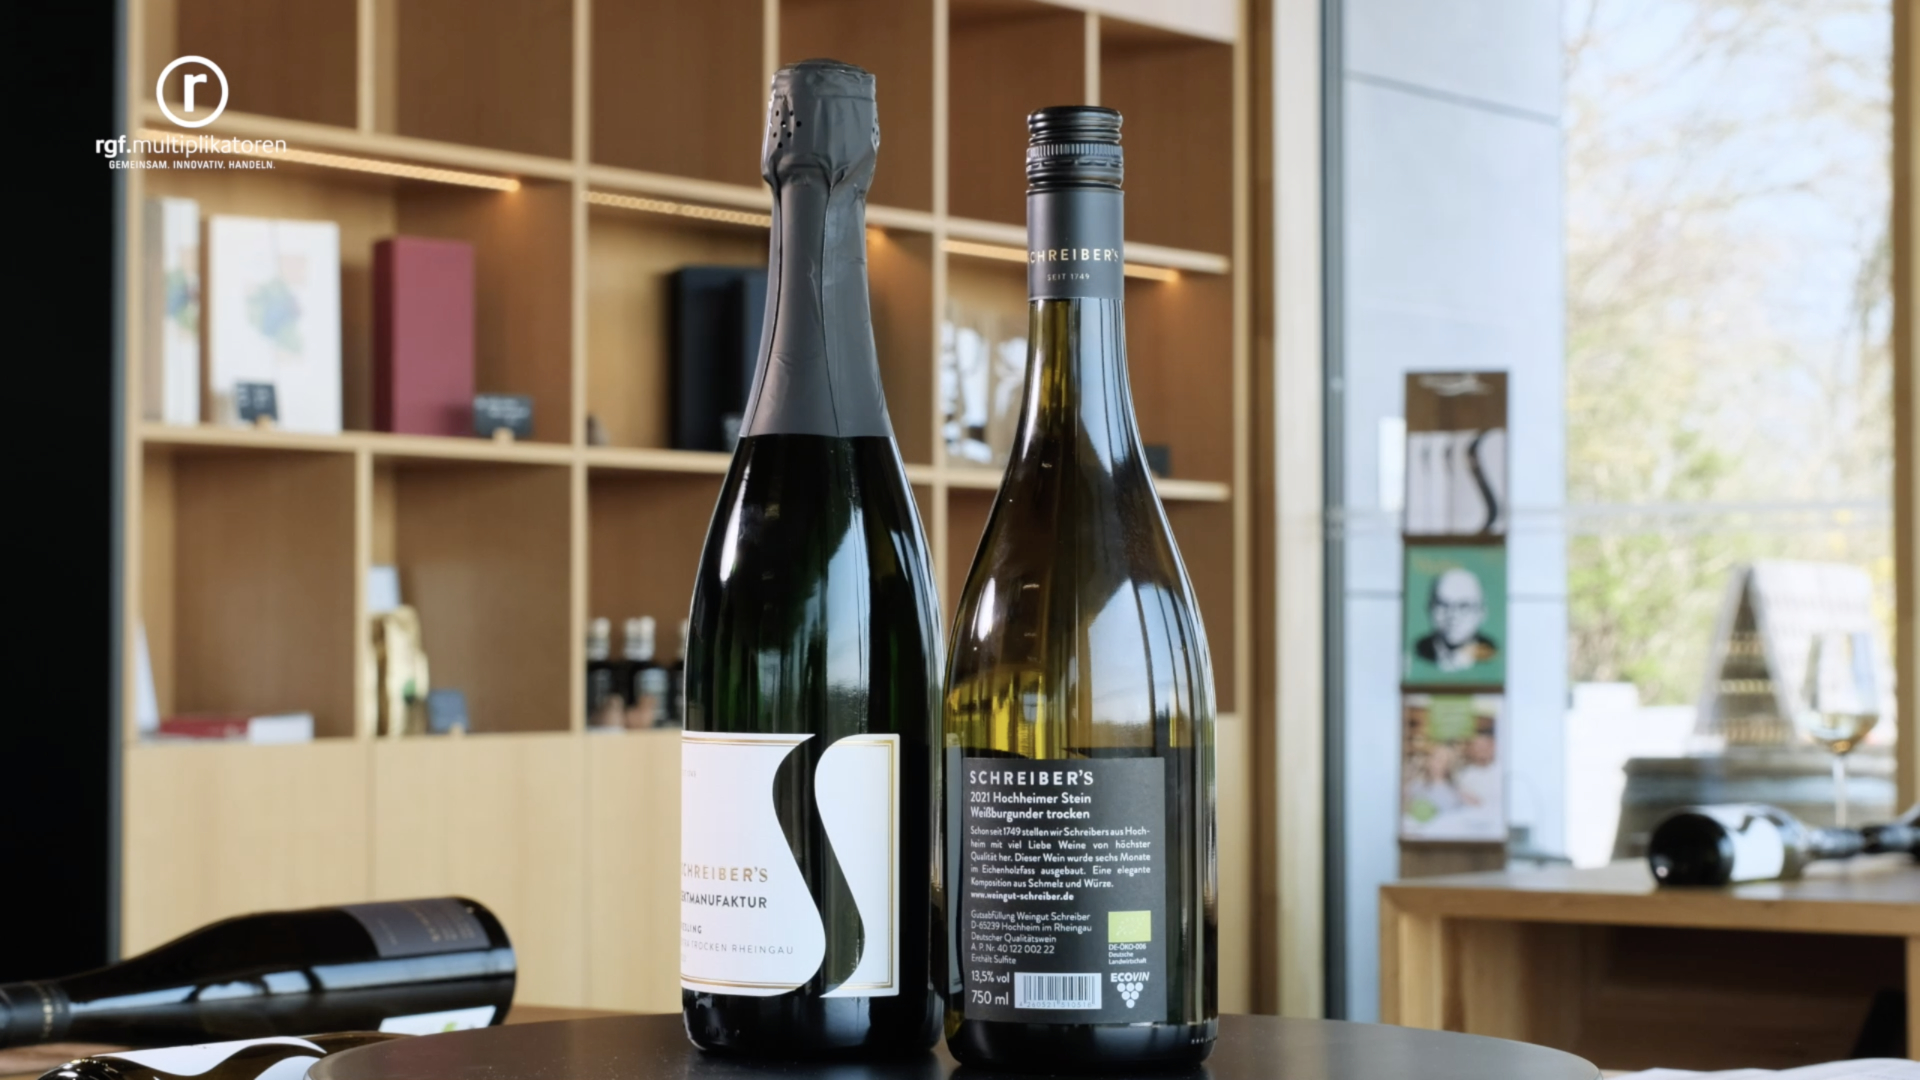 Edle Weinetiketten nach Bedarf mit der OKI Pro1050 drucken
Best Practice beim Weingut Schreiber in Hochheim